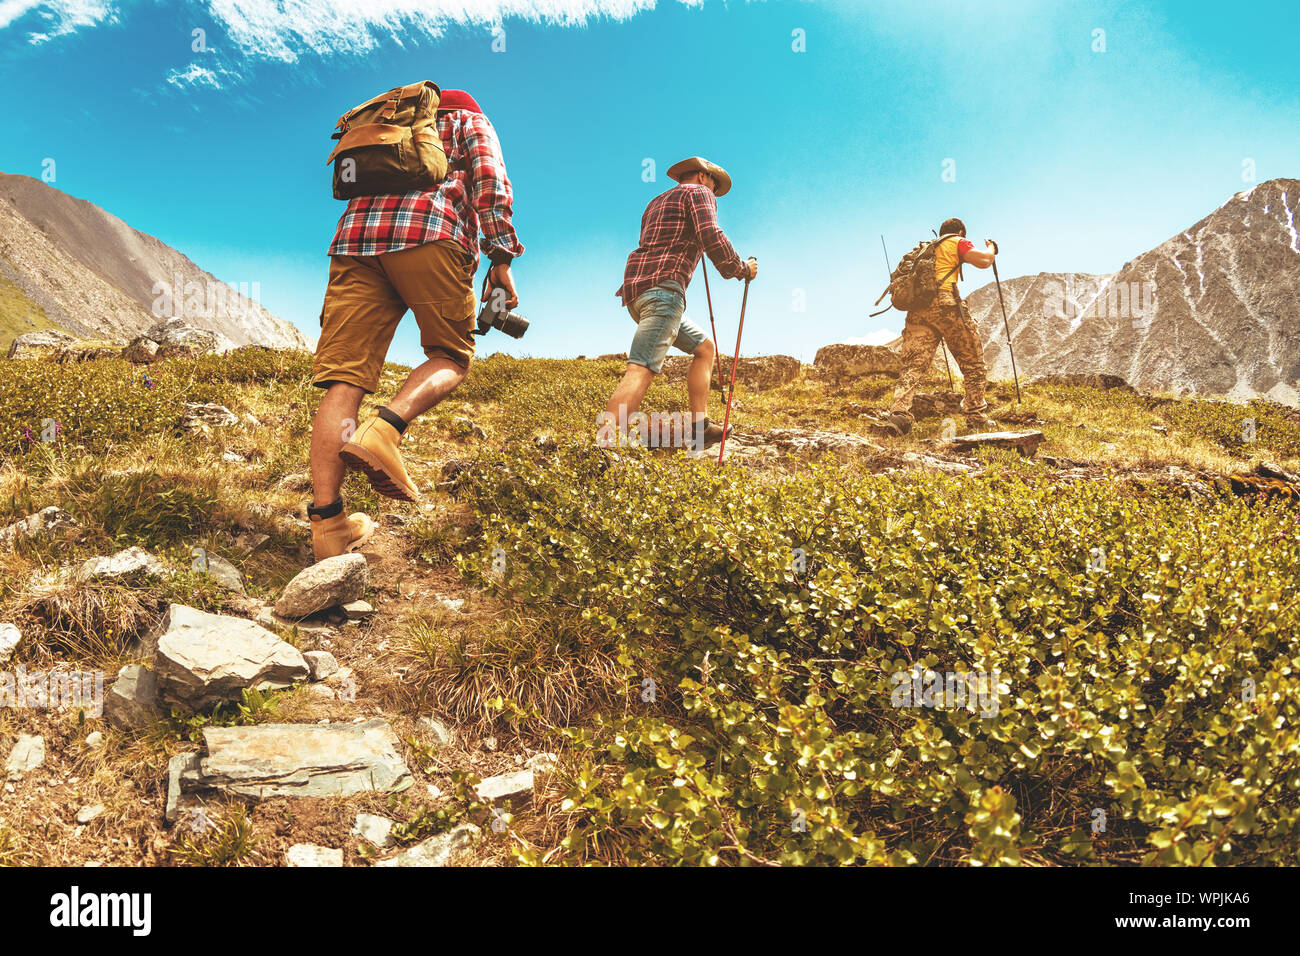 Gruppe von drei Touristen, Wanderer oder Freunde trekking hinauf in die Berge Stockfoto